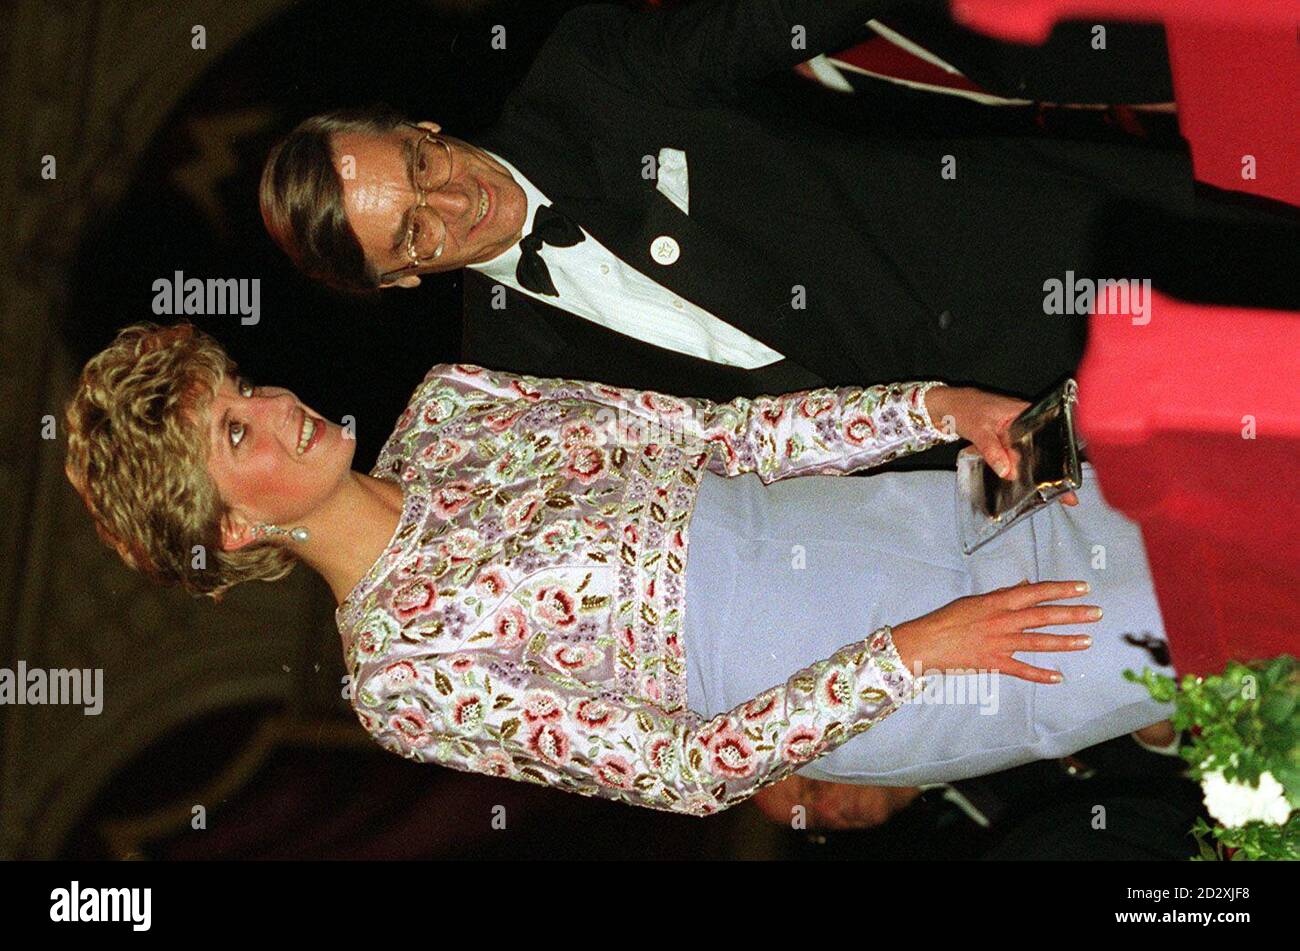 Abiti di Diana: Diana, Principessa del Galles, indossa un lungo abito da sera in crespa di seta lilla con un bodice in perline, di Catherine Walker, nel 40° anniversario dell'accesso della Regina nel 1992. L'abito fa parte di una collezione di 80 ballgown appartenenti alla principessa che andrà sotto il martello a Christie's nel mese di giugno. L'asta di beneficenza, che si dice sia l'idea del figlio maggiore, Prince William, si terrà a New York il 25 giugno, con i proventi che vanno al Royal Marsden Hospial Cancer Fund e al Aids Crisis Trust. PA. VEDI LA STORIA DELLA PA ROYAL DIANA. Foto di Martin Keene. Foto Stock